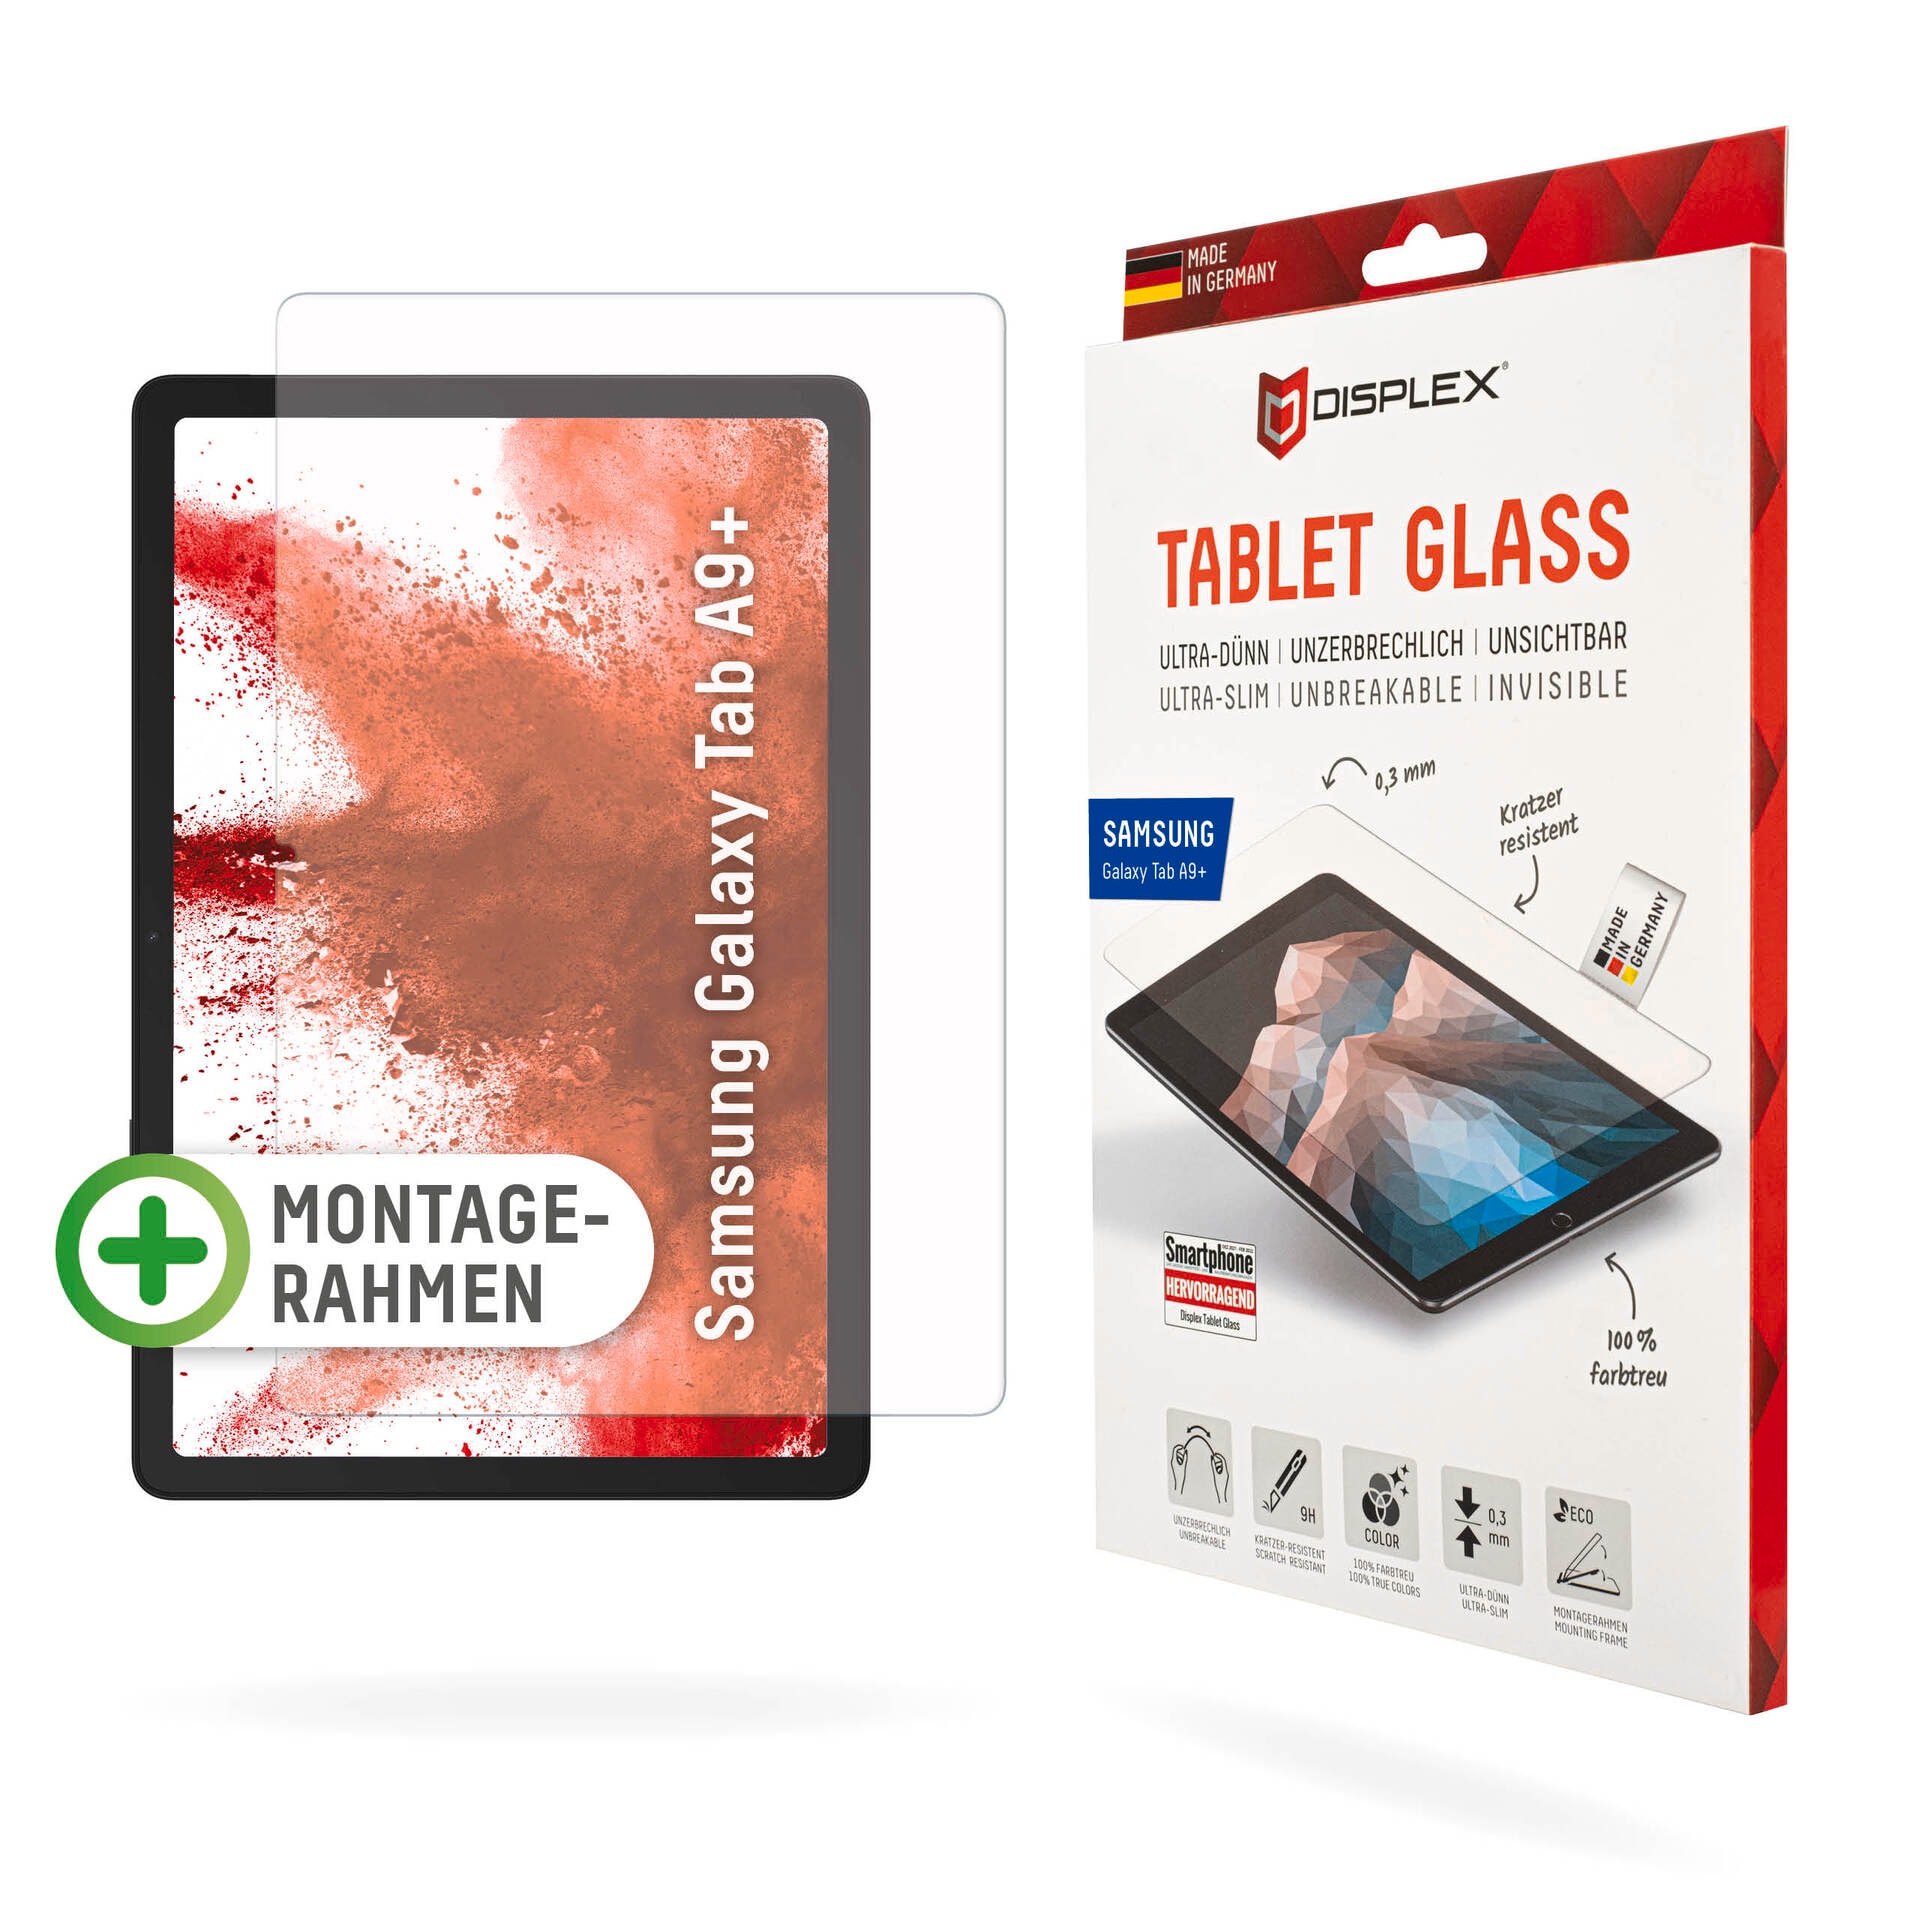 Displex Displayschutzglas »Tablet Glass« dėl S...